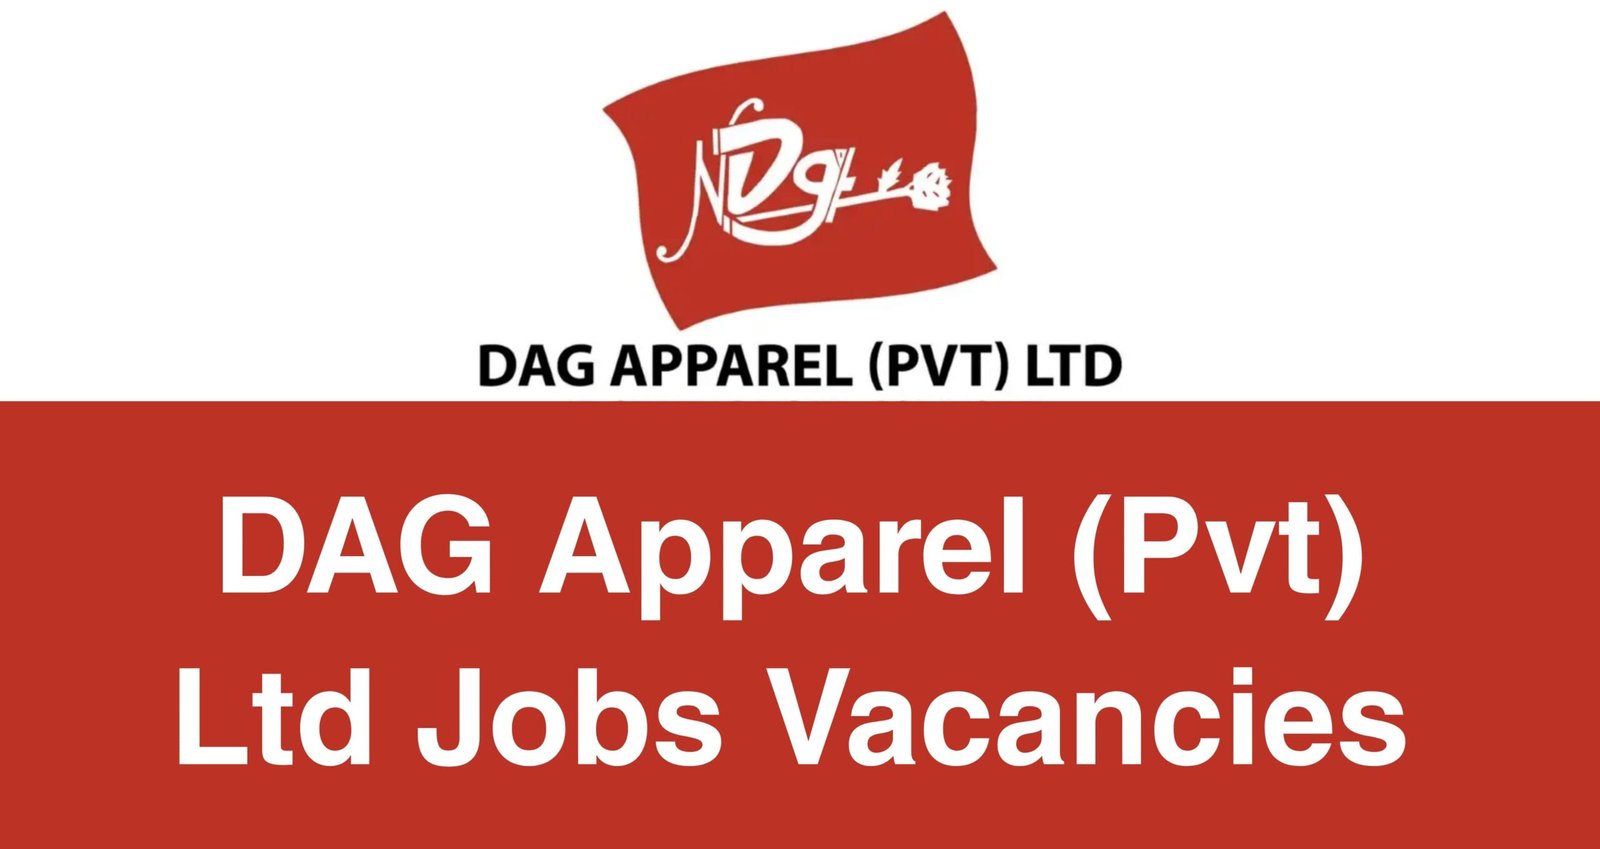 DAG Apparel (Pvt) Ltd Jobs Vacancies